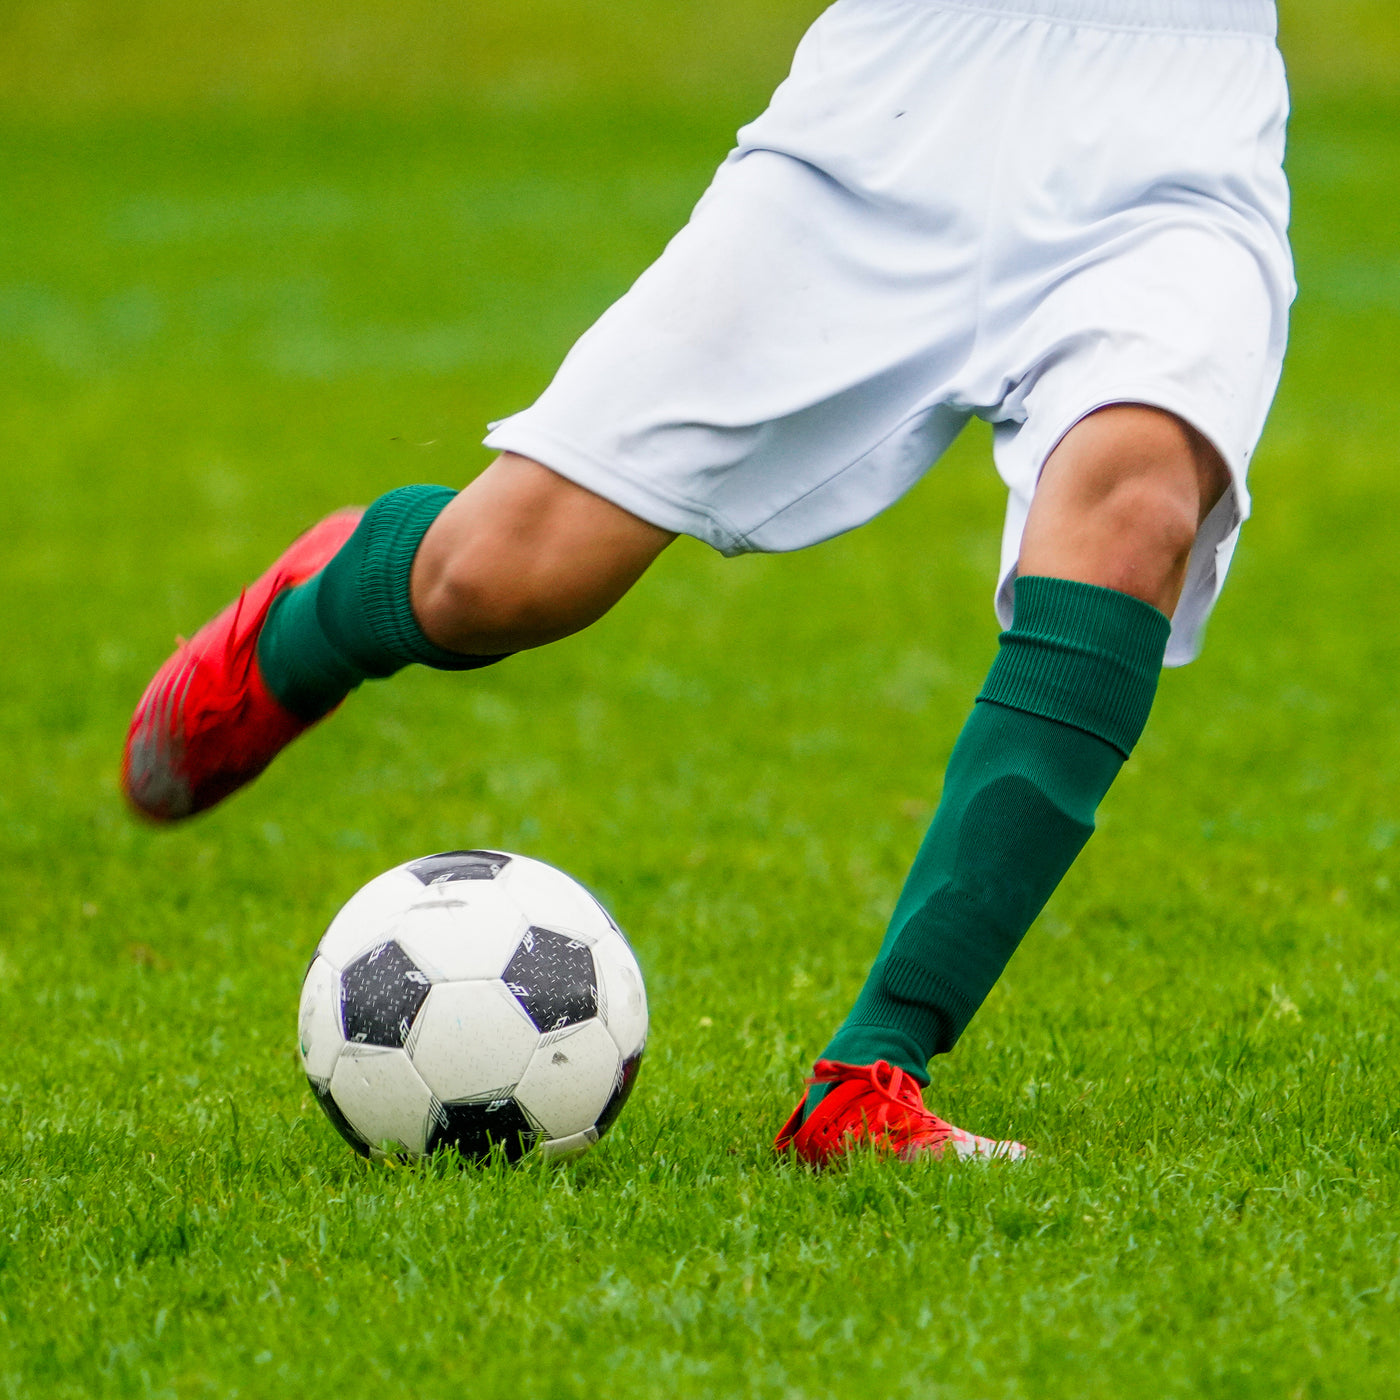 Hue Green Soccer Knee-High Socks